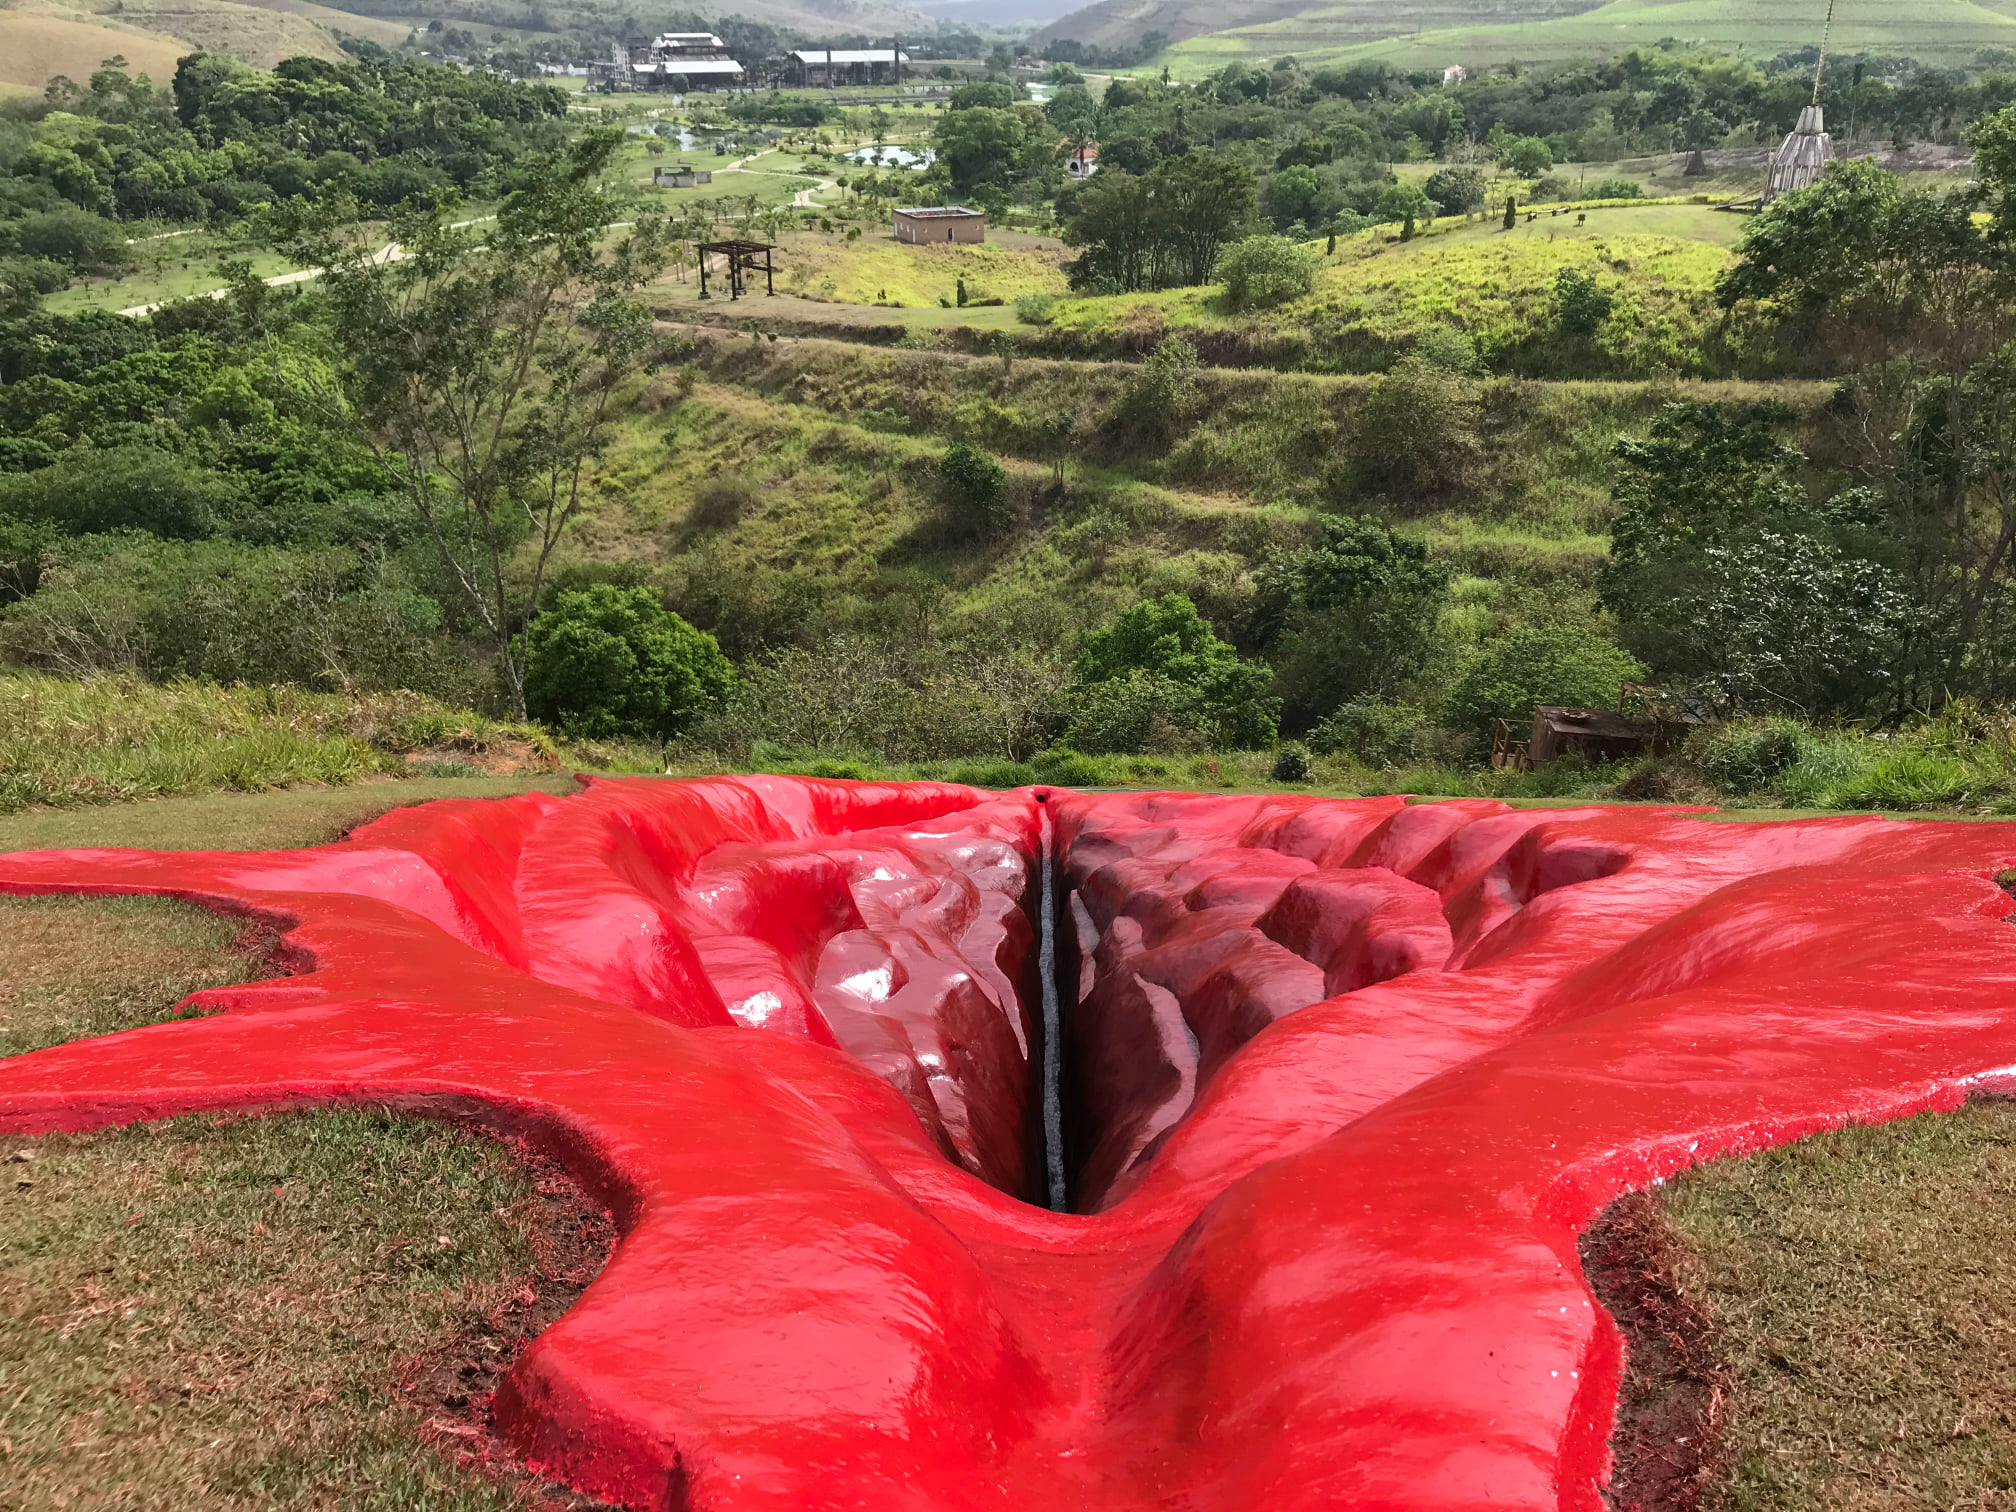 Vulva sculpture on a hillside in Brazil